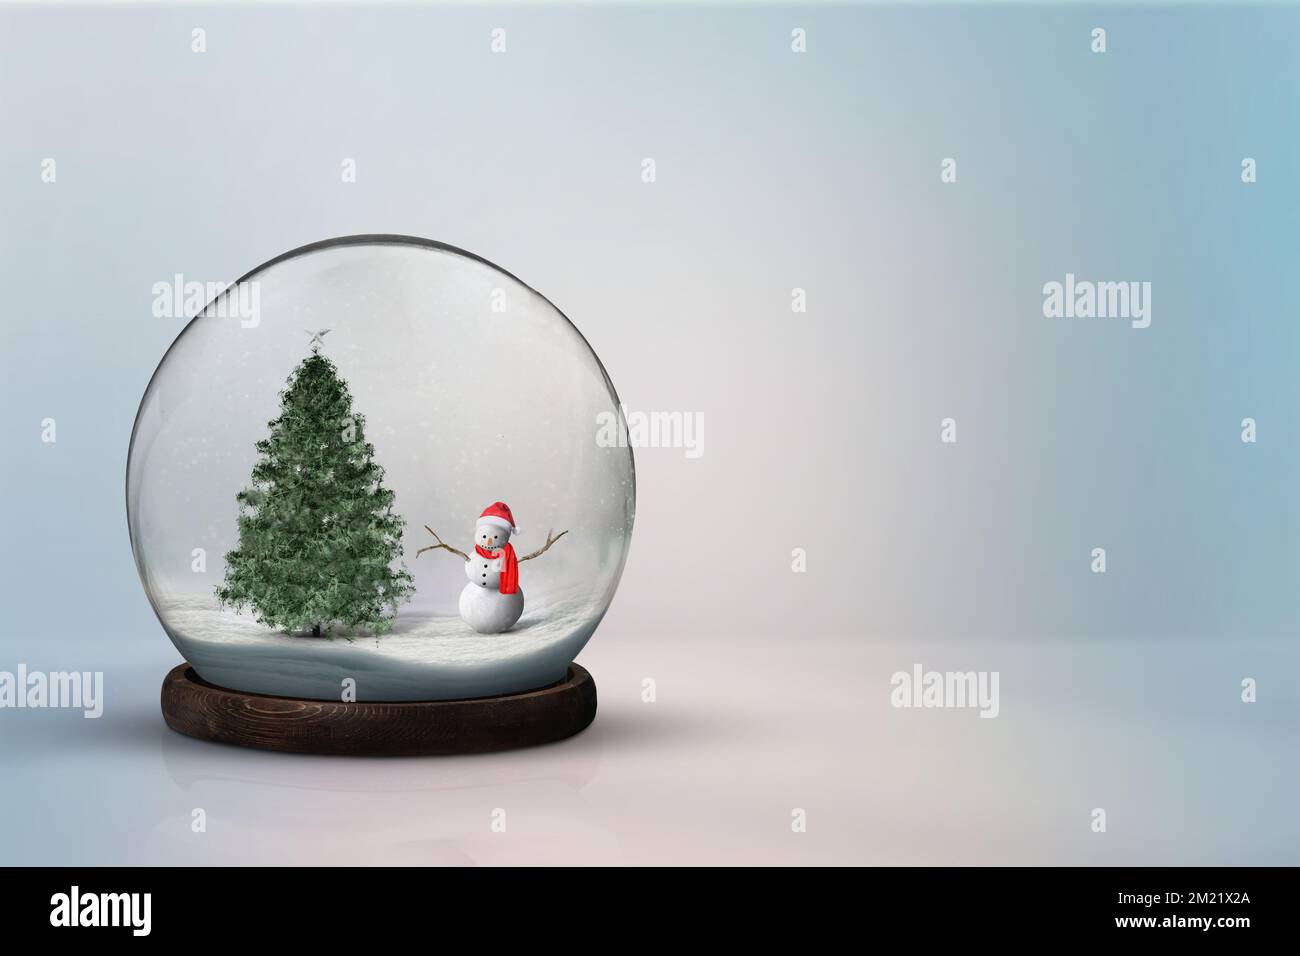 Weihnachtsfeiertage in einem Schneeball. Schneeball mit weihnachten auf einem einfachen weißen Hintergrund. Stockfoto